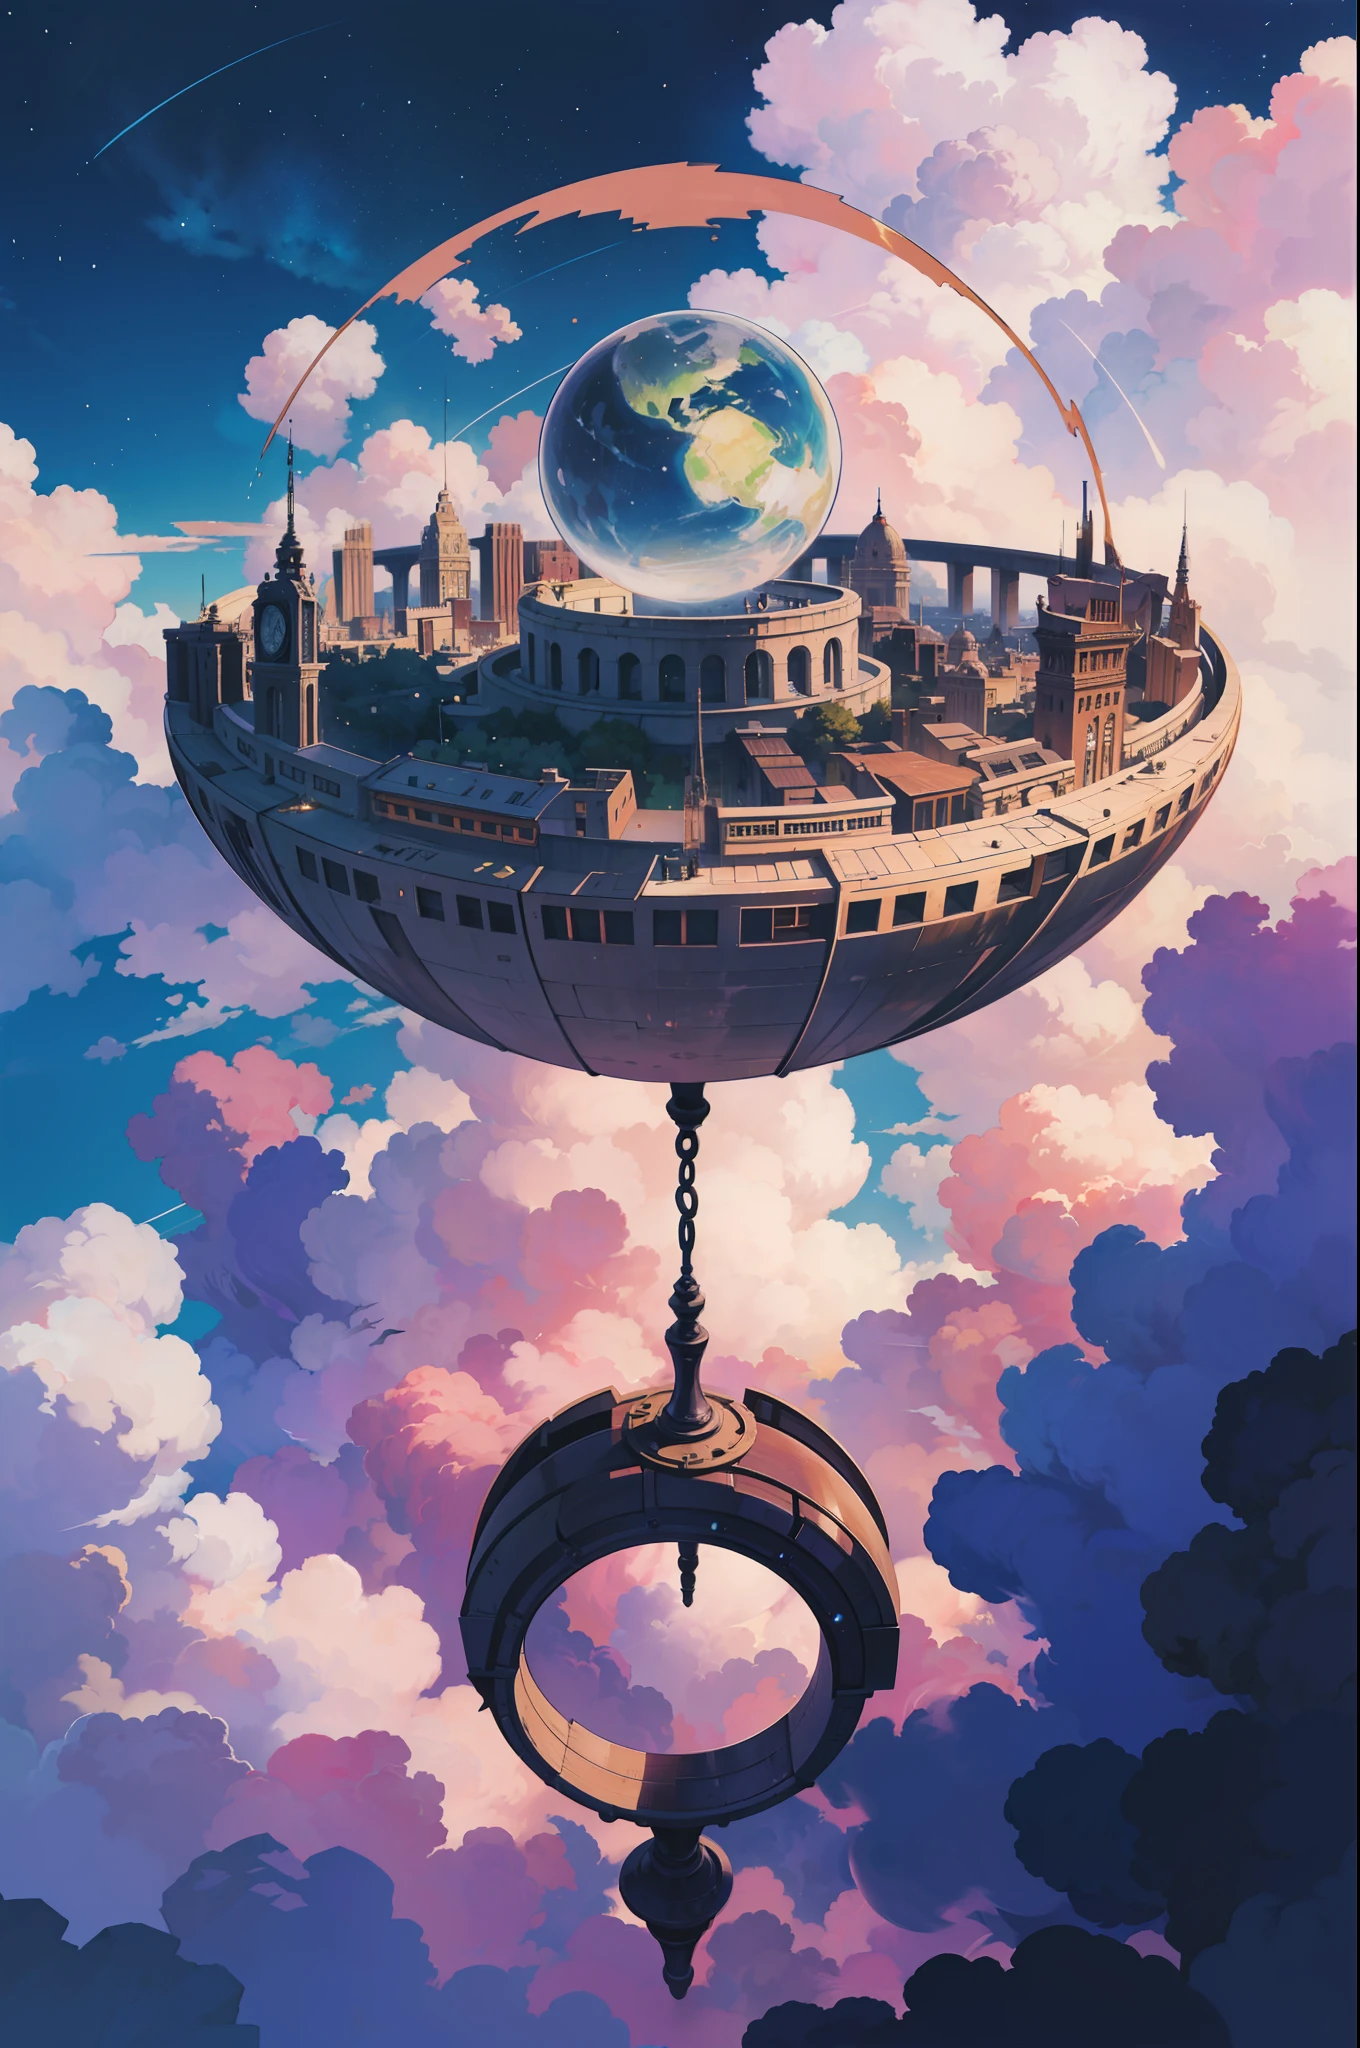 （léviter：1.5），（Une immense ville steampunk à double anneau flottant dans l&#39;espace：1.3），（Ville steampunk futuriste illuminée：1.4），（nuages épais：1.4），（Style de Makoto Shinkai：1.4），réjouir，qualité parfaite，Mise au point claire（désordre - maison：0.8）， （chef-d&#39;œuvre：1.2）， （de manière réaliste：1.2） ，（avec une lumière brillante：1.2）， （meilleure qualité）， （ciel étoilé détaillé：1.3） ，（détails complexes）， （8k）， （Météore de détail） ，（netteté），（s&#39;amuser），（Oeuvre numérique primée：1.3） de （esquisse：1.3），（avec dynamisme：1.3）,lumière de studio,thème，regardant d&#39;en haut, l&#39;espace, deloat， --à 6